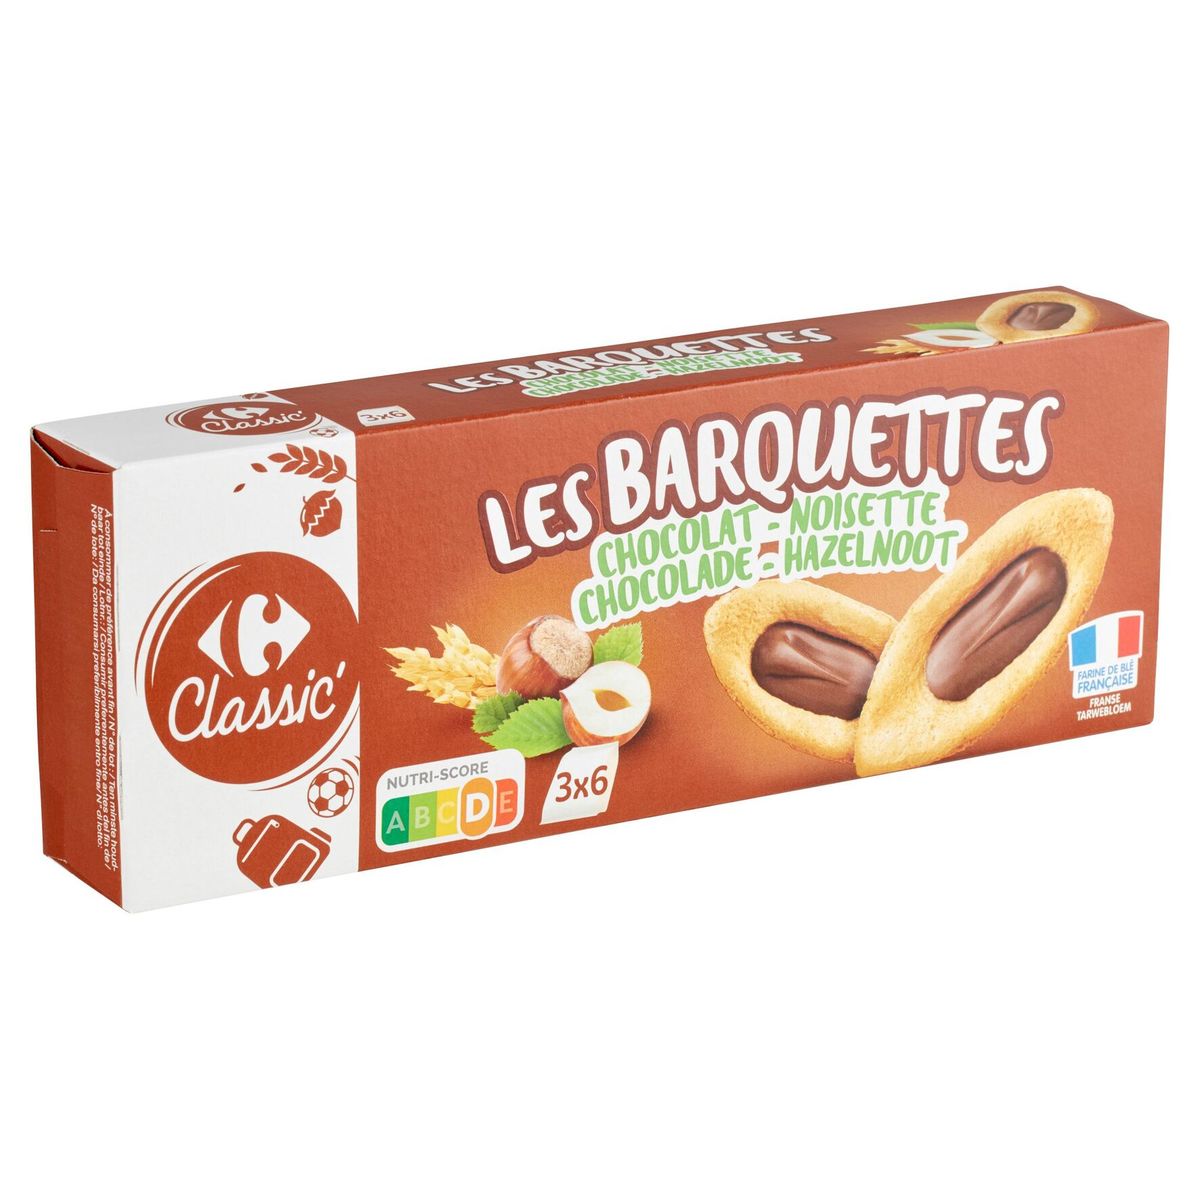 Carrefour Classic' les Barquettes Chocolat - Noisette 120 g